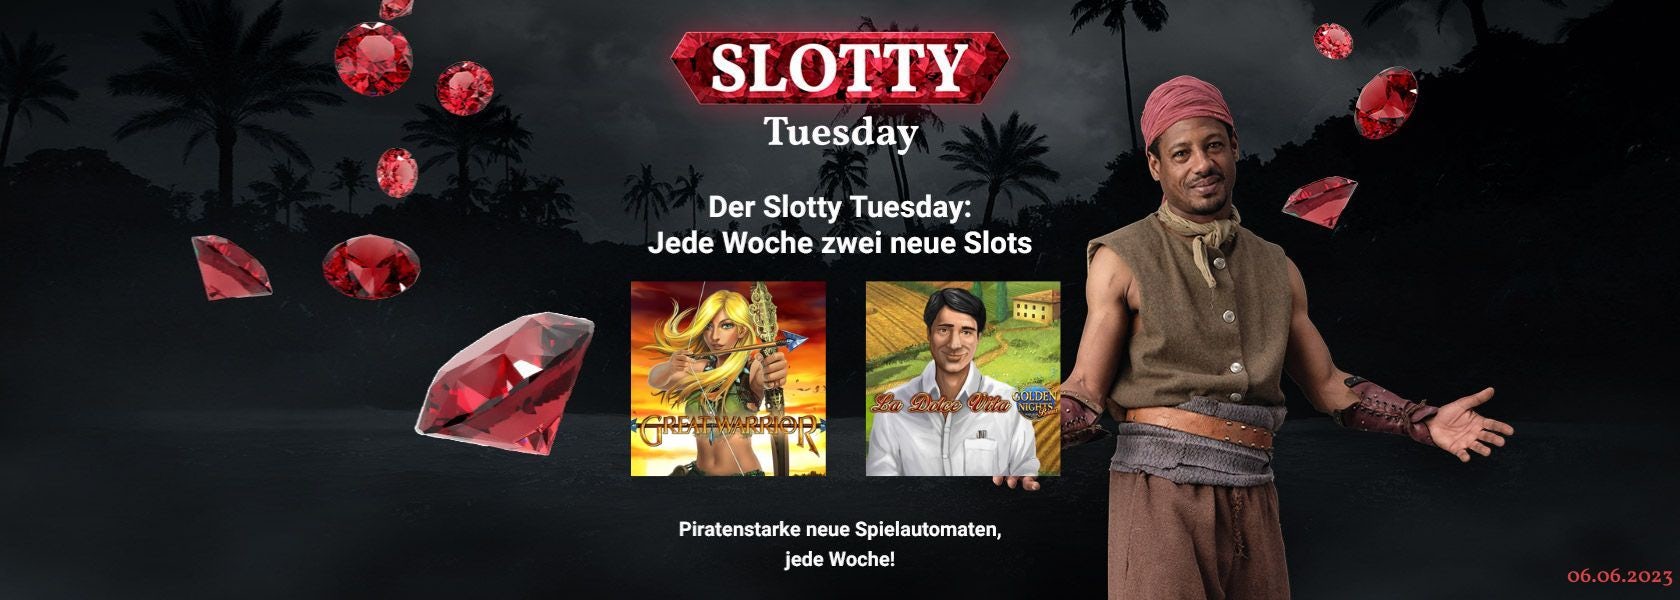 JPI-Header-Slotty-Tuesday-0606